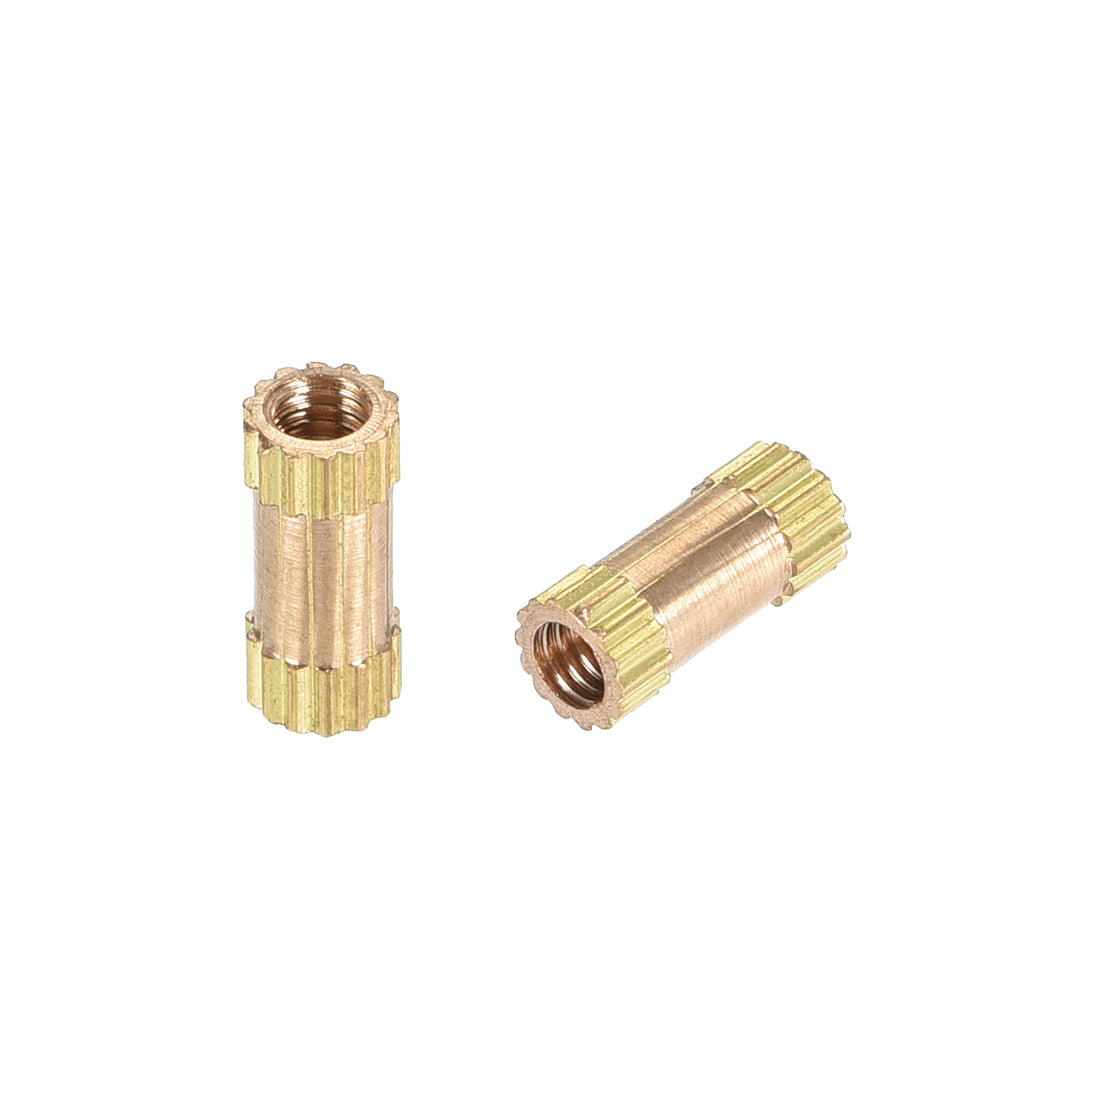 uxcell Uxcell Knurled Insert Nuts, M2.5 x 8mm(L) x 3.5mm(OD) Female Thread Brass Embedment Assortment Kit, 50 Pcs